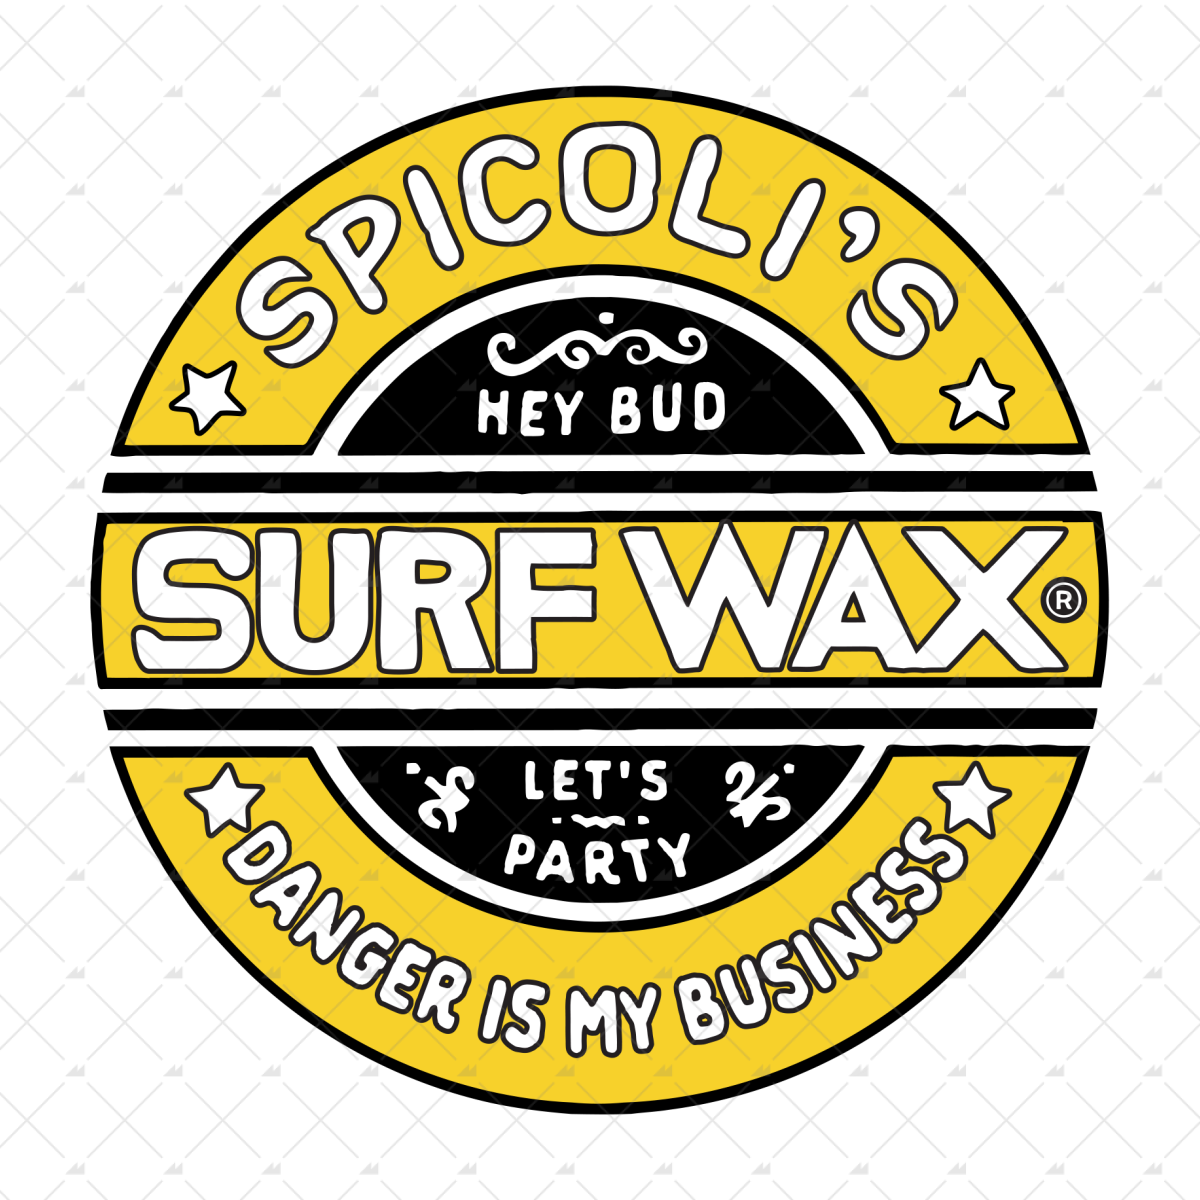 Spicoli's Surf Wax - Sticker